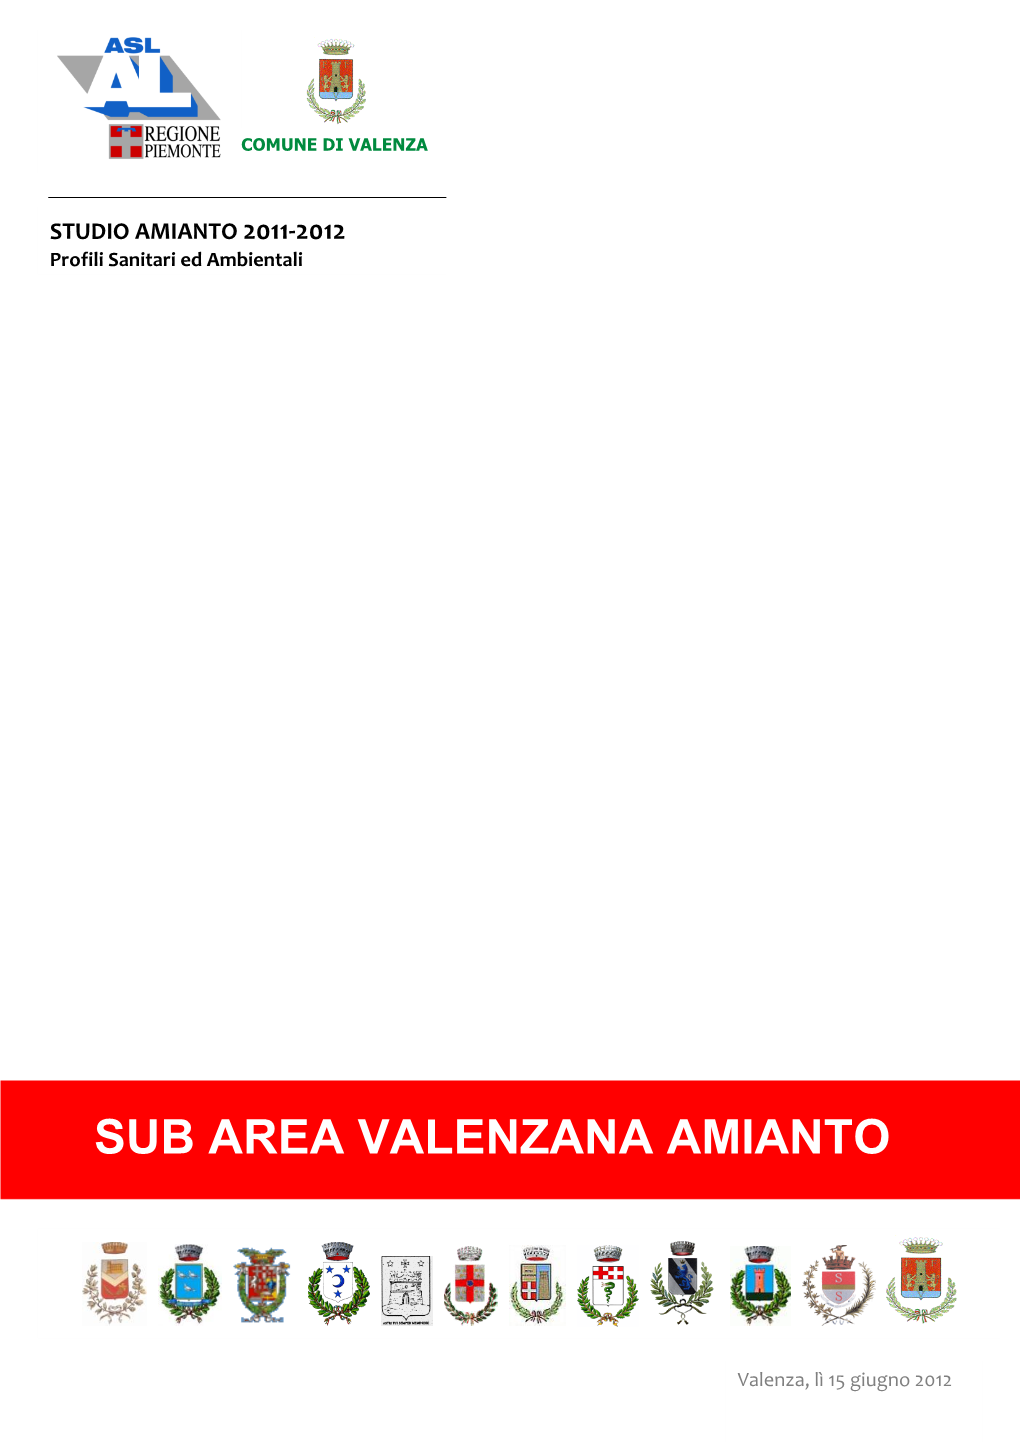 Sub Area Valenzana Amianto